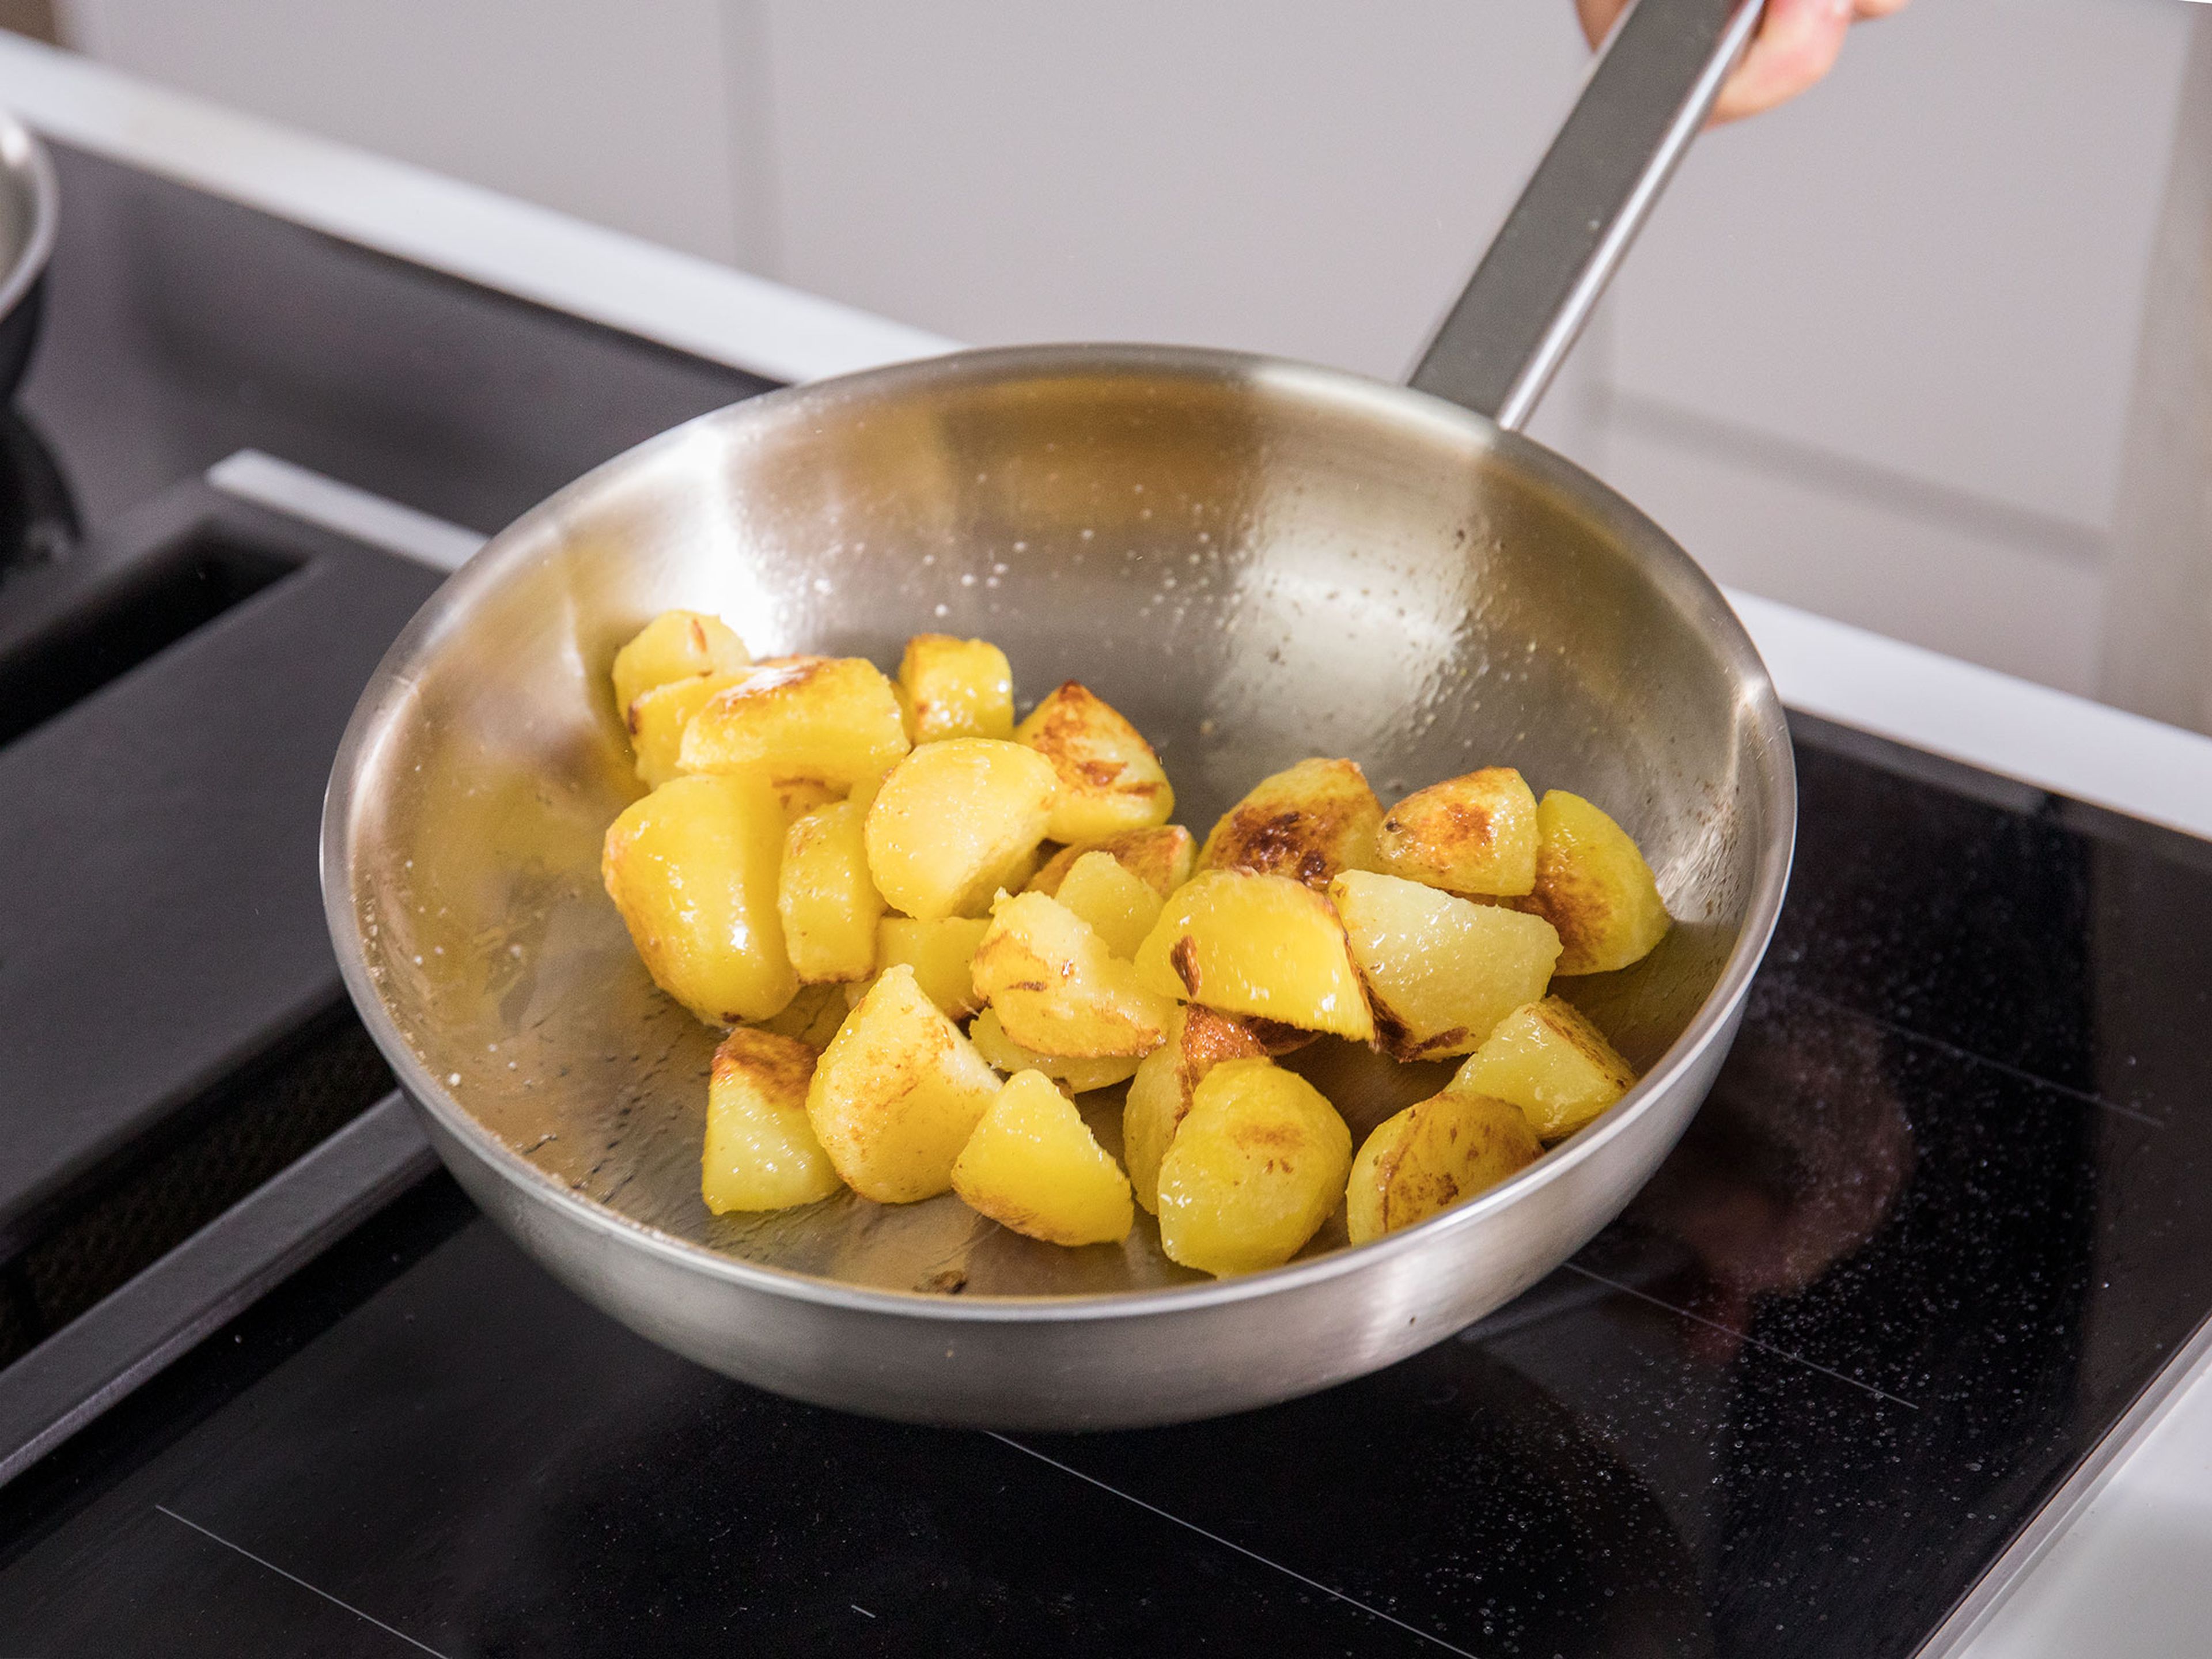 Kartoffeln abgießen, kurz abkühlen lassen, dann pellen. Pflanzenöl bei mittlerer Temperatur in einer Pfanne erhitzen und die Kartoffeln goldbraun rösten. Mit dem restlichen Zucker und etwas Salz würzen und beiseitestellen.